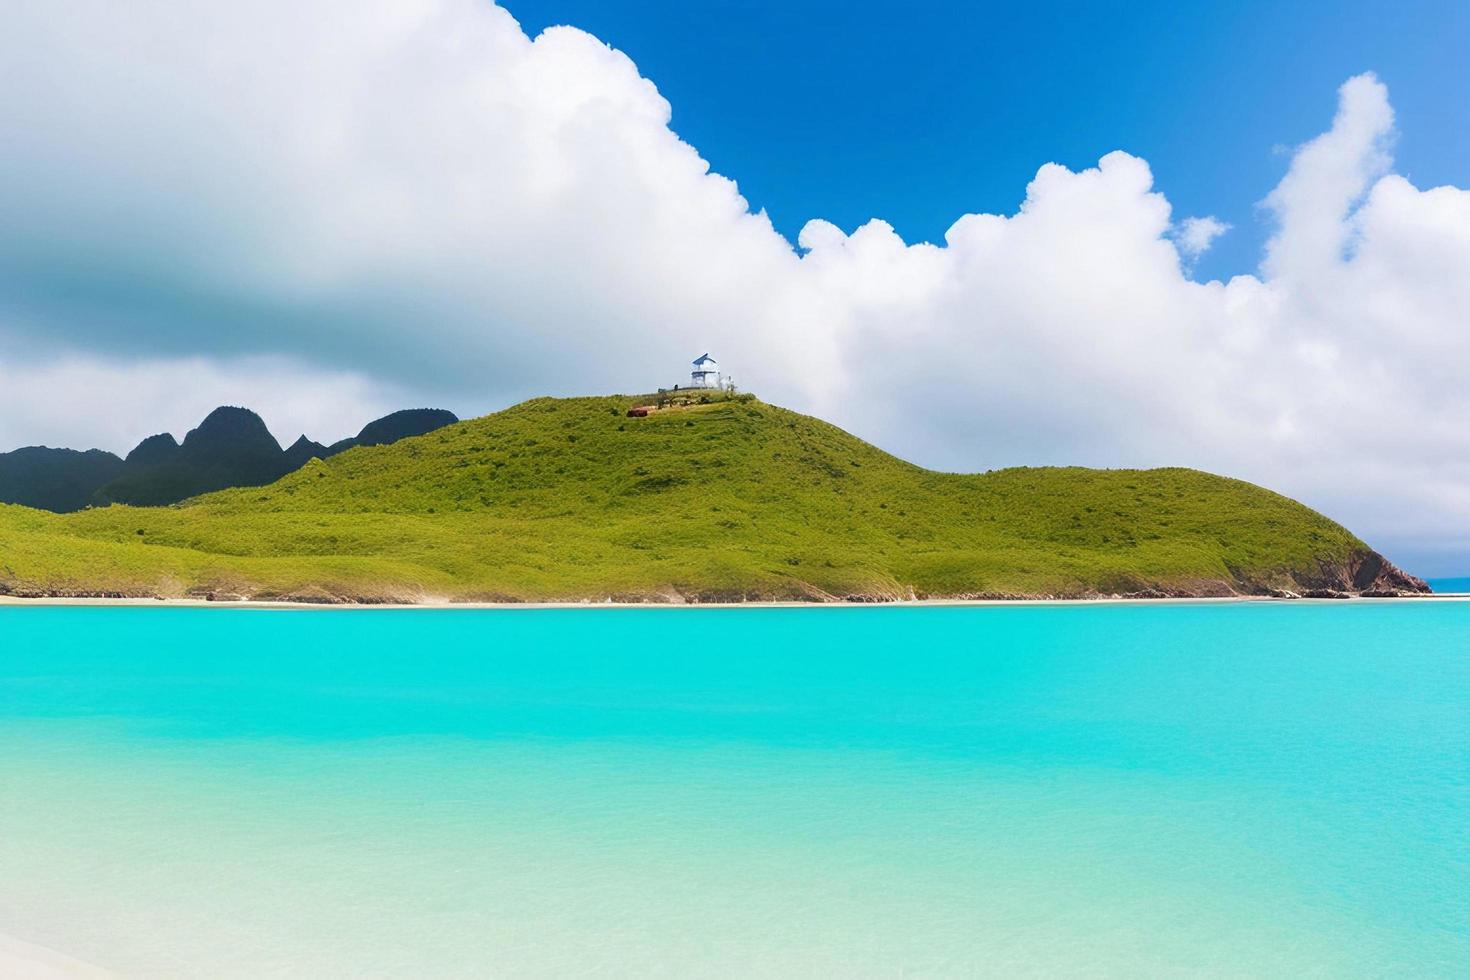 hermosa playa tropical con océano azul. concepto de vacaciones de verano de fondo de playa de paraíso tropical de arena blanca. foto